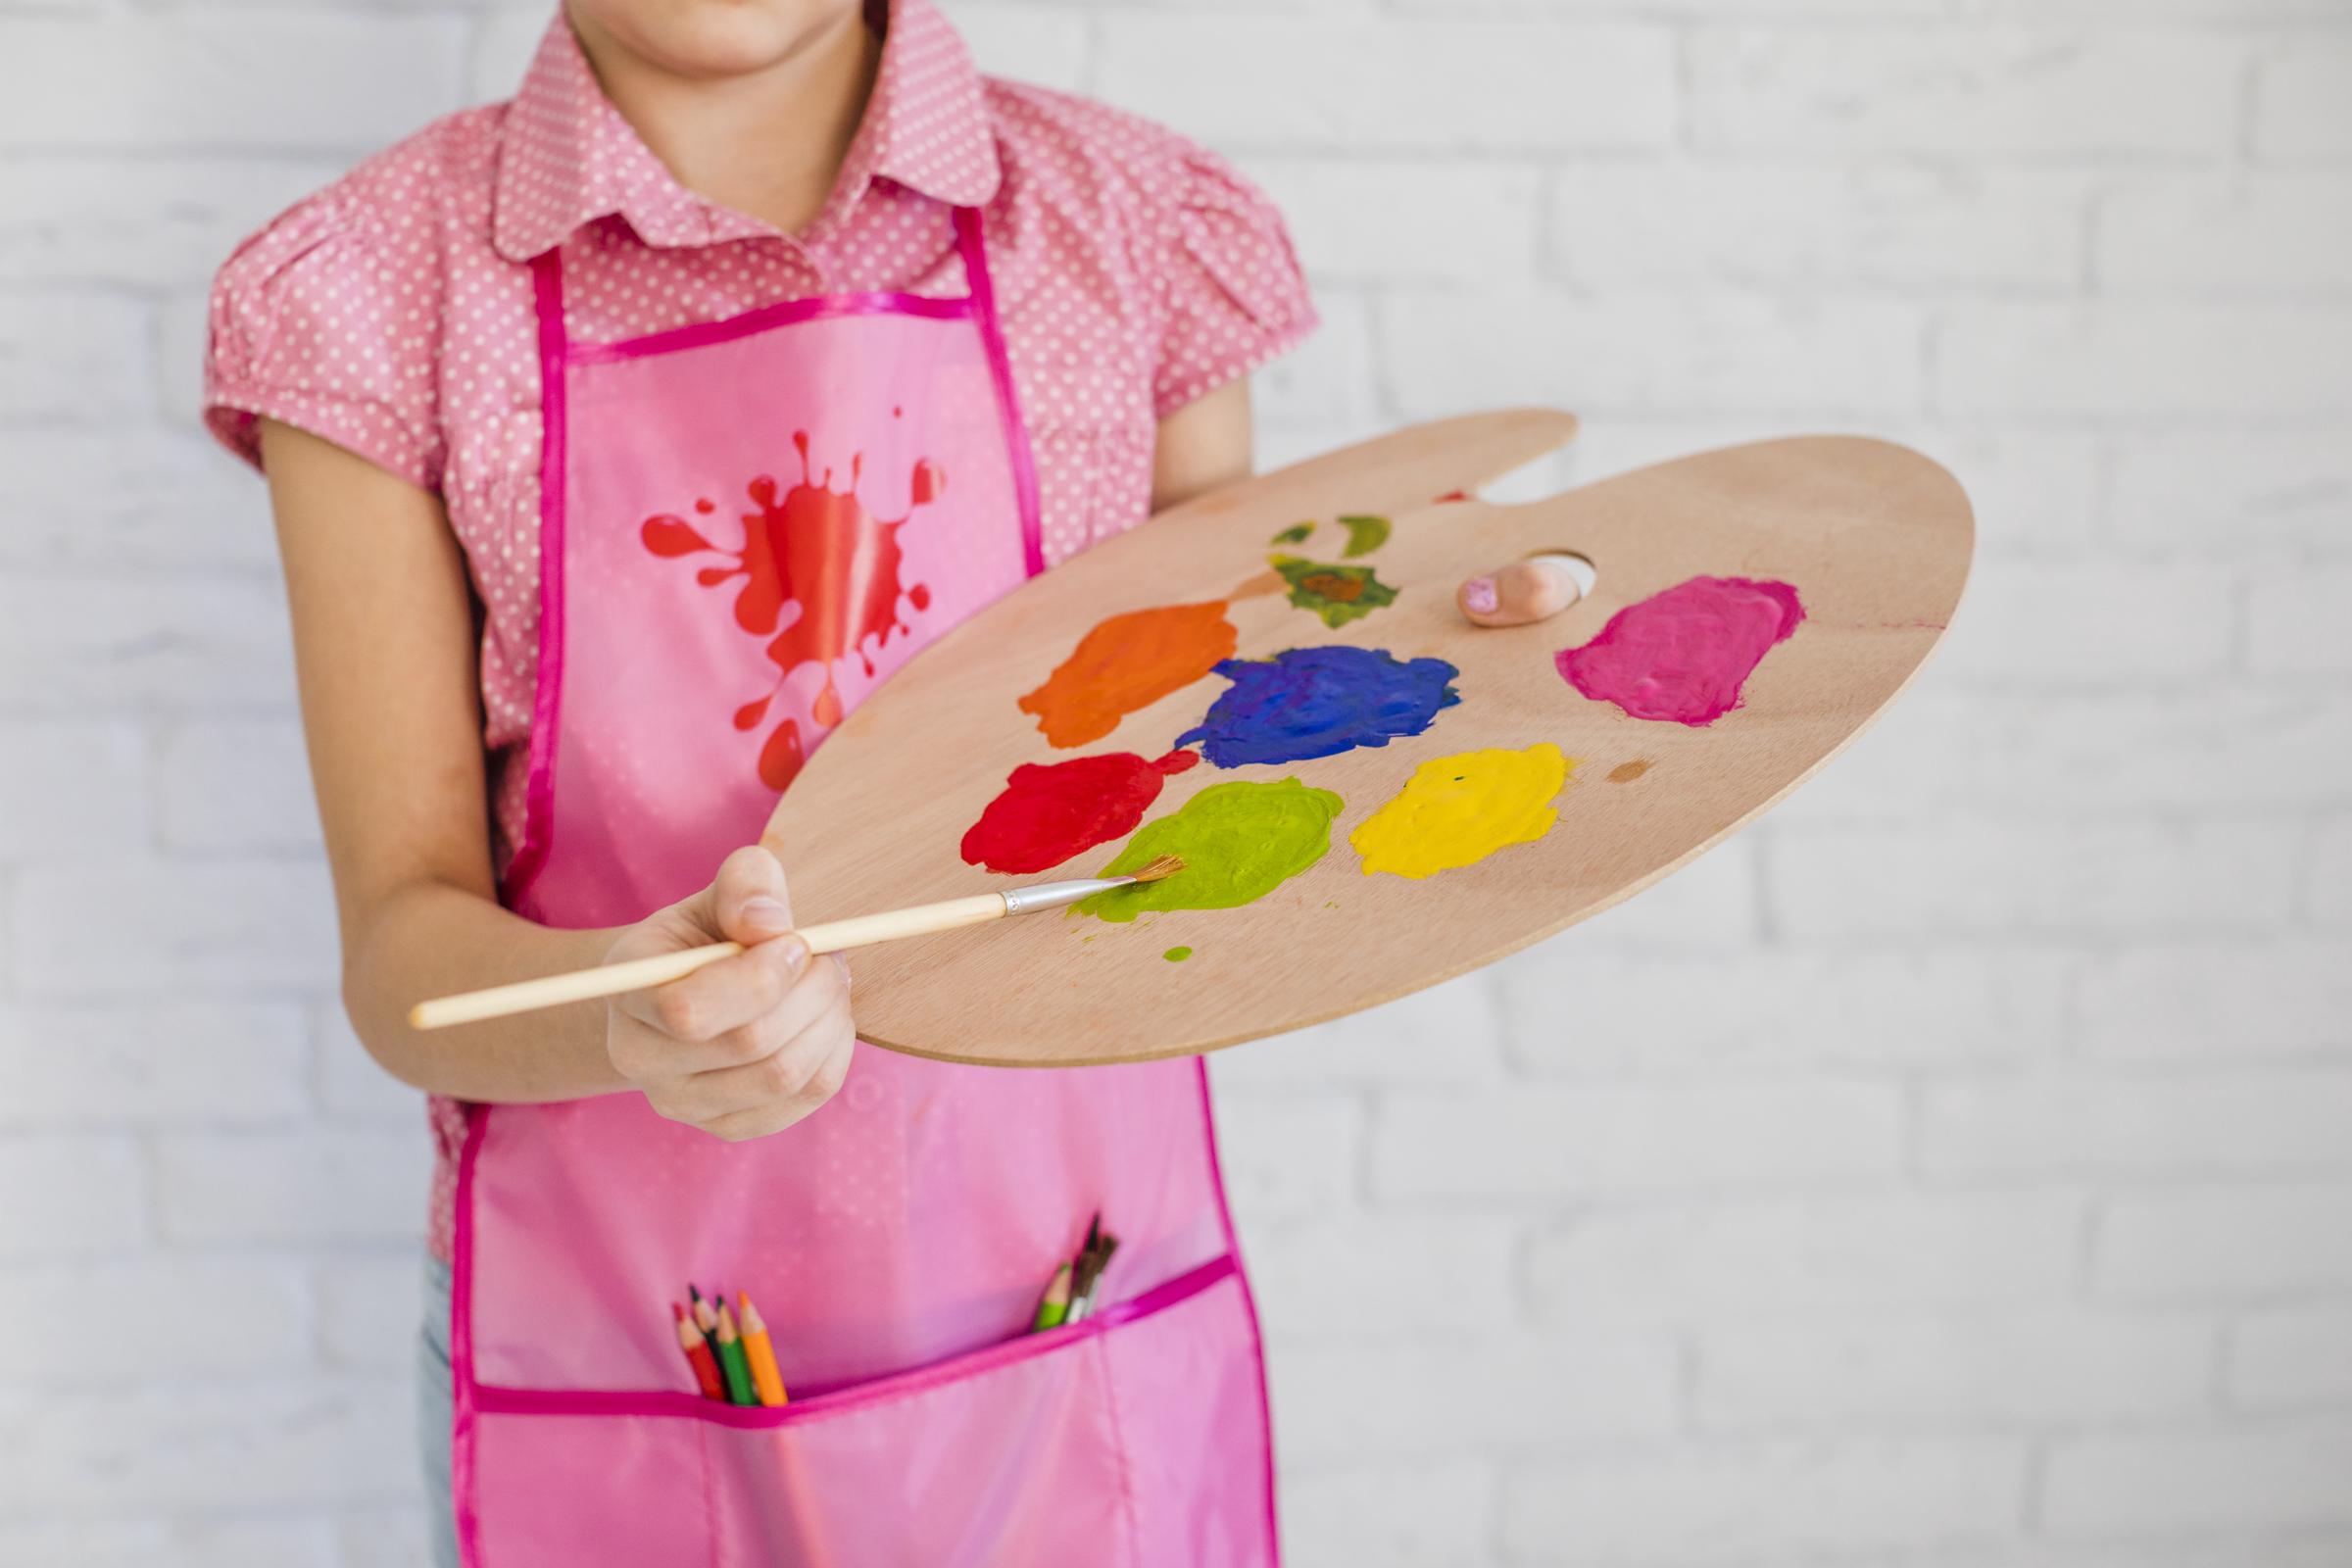 Un niño sujetando una paleta de colores | Fuente: Freepik